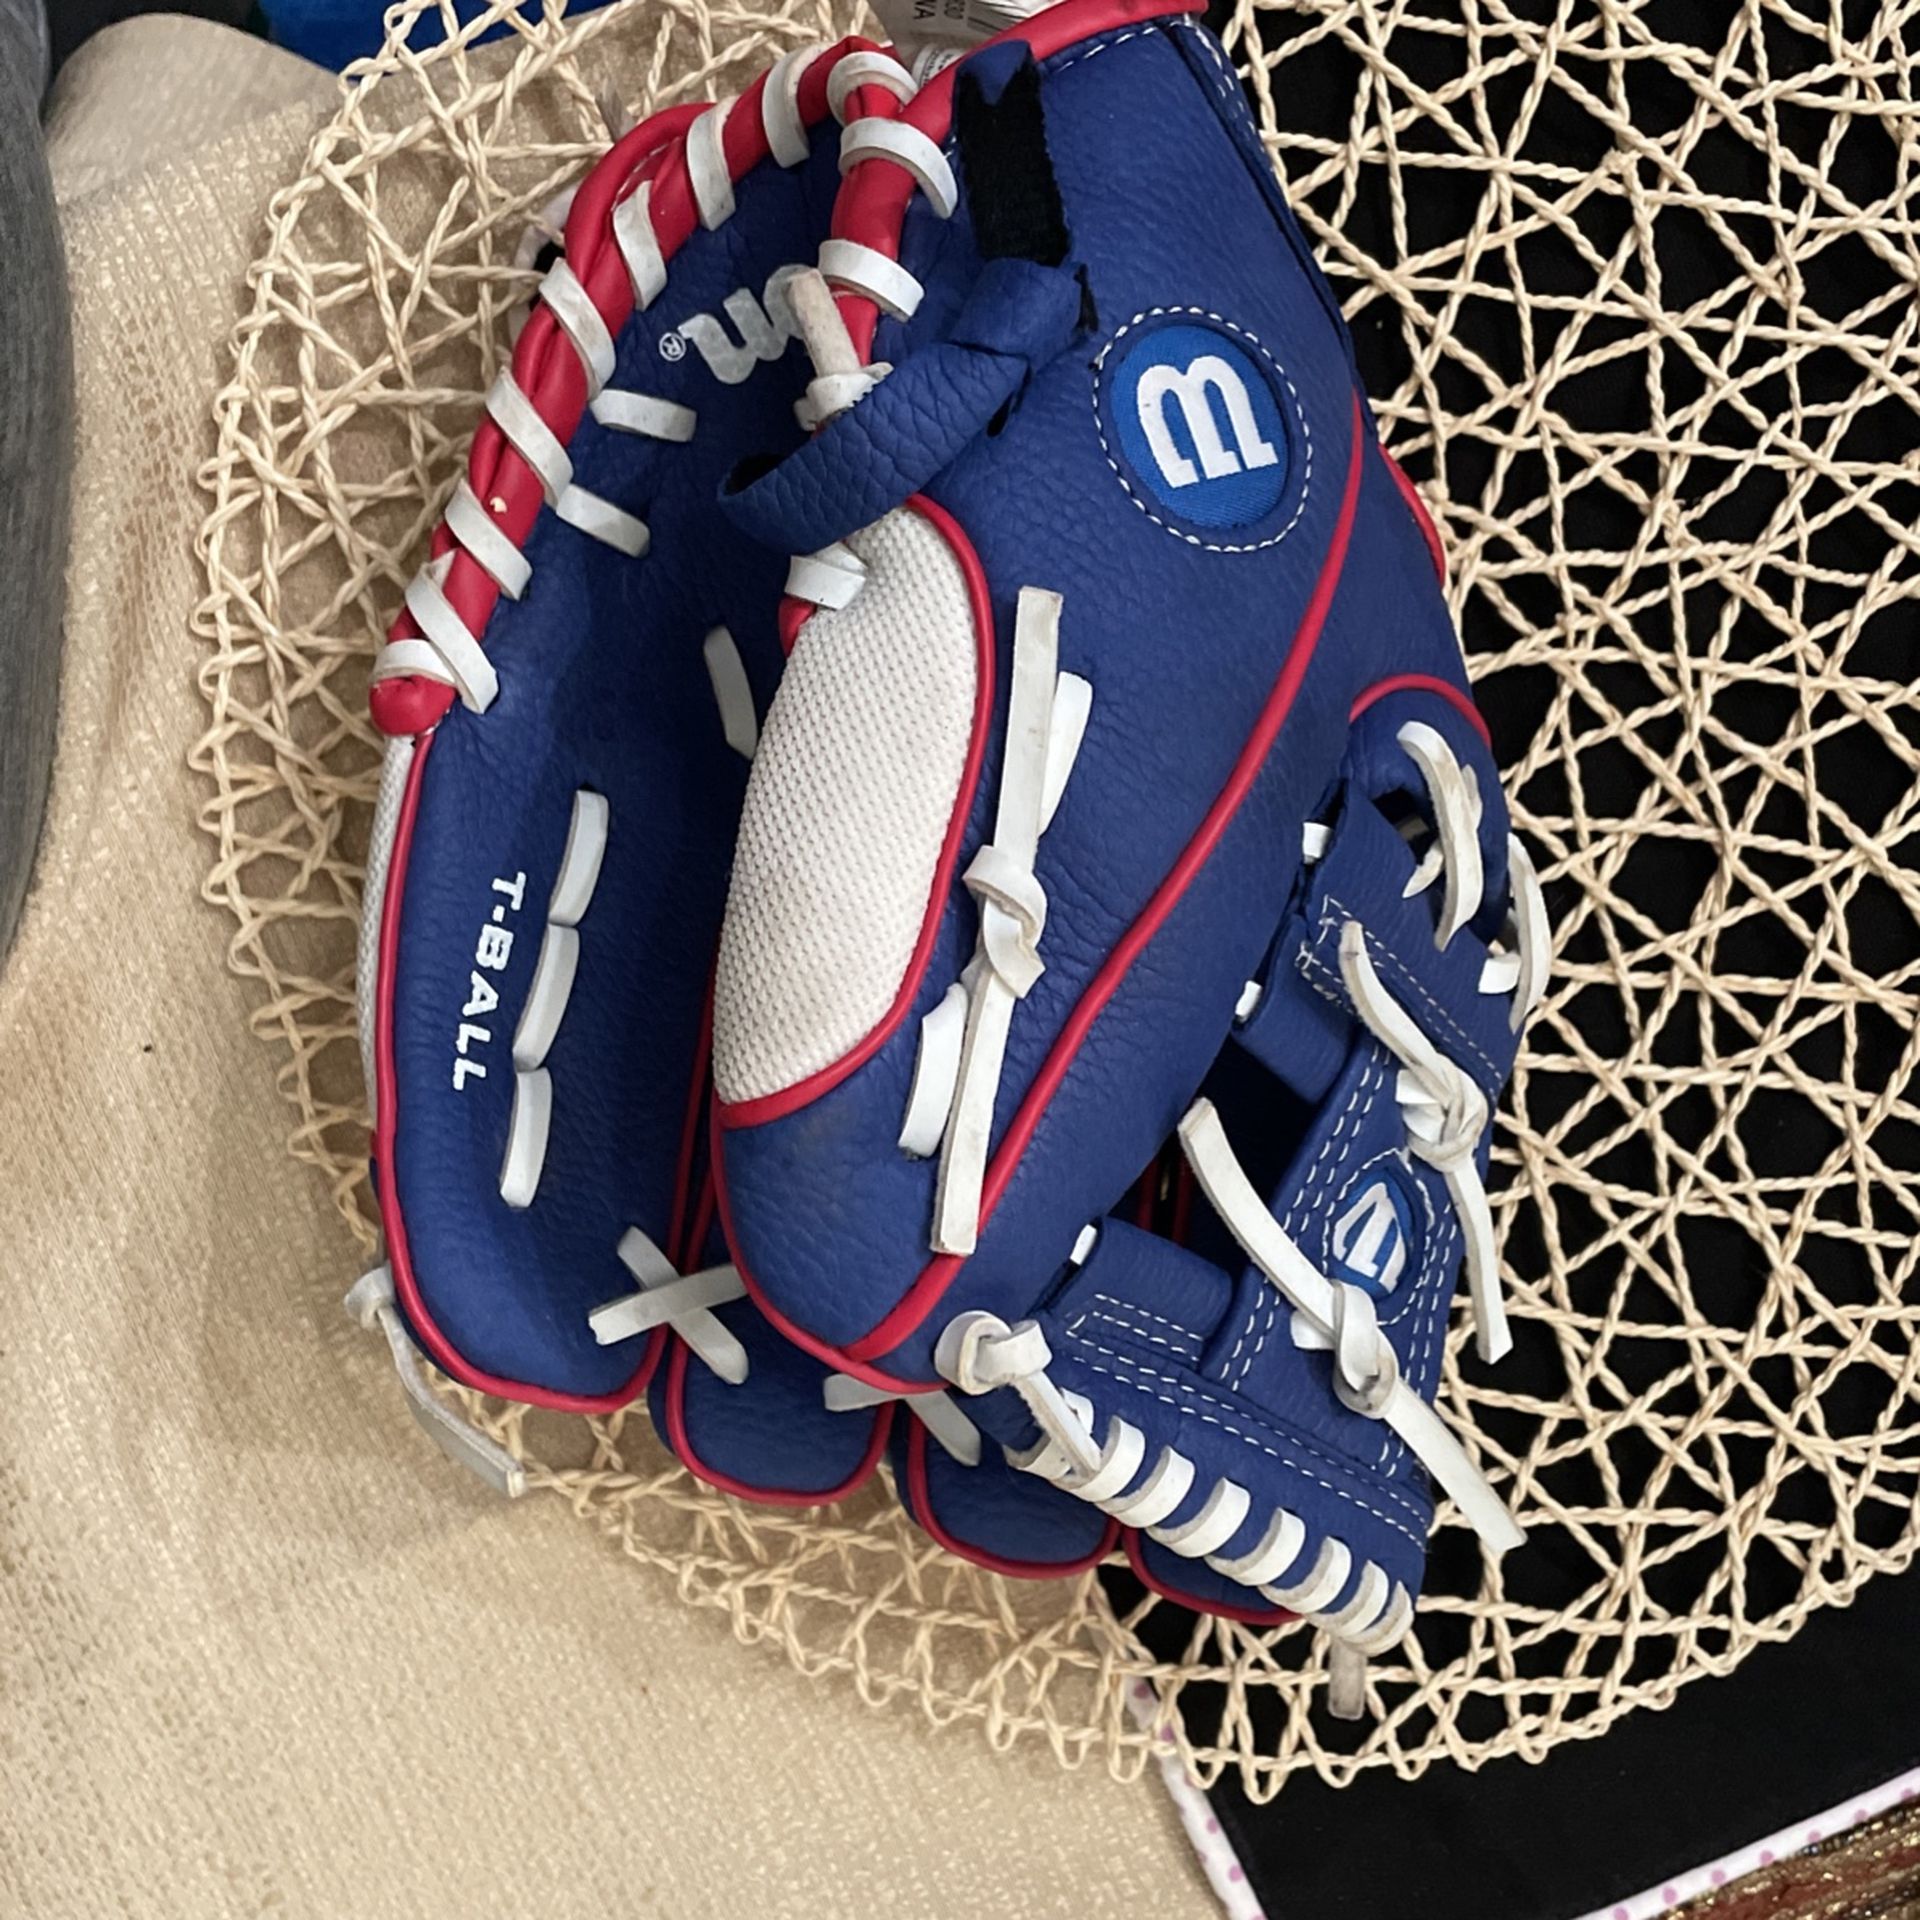 Little Boys Baseball Glove Wilson. Brand In Good Shape 